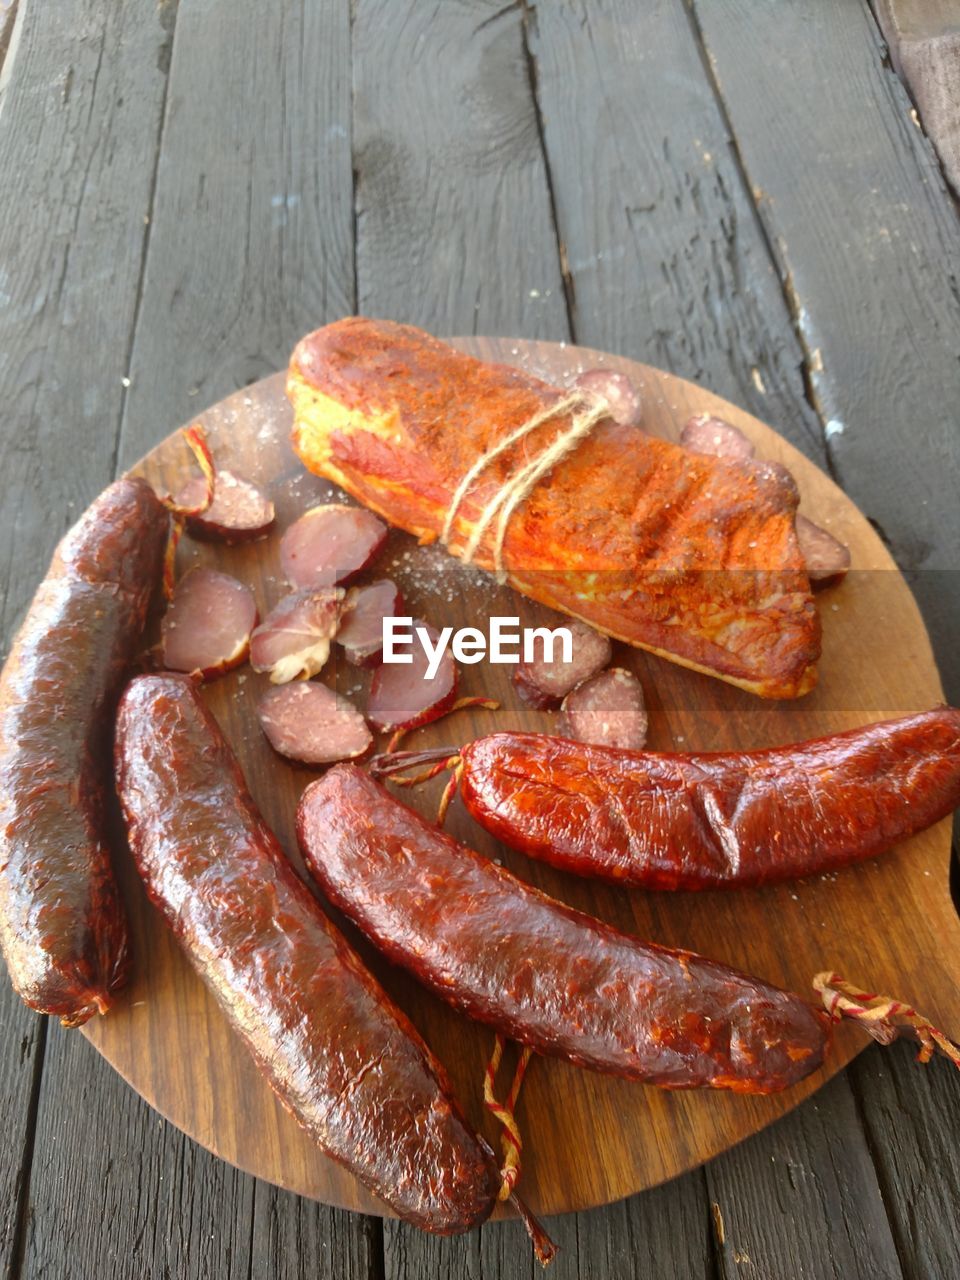 High angle view of home made smoked sausage on table